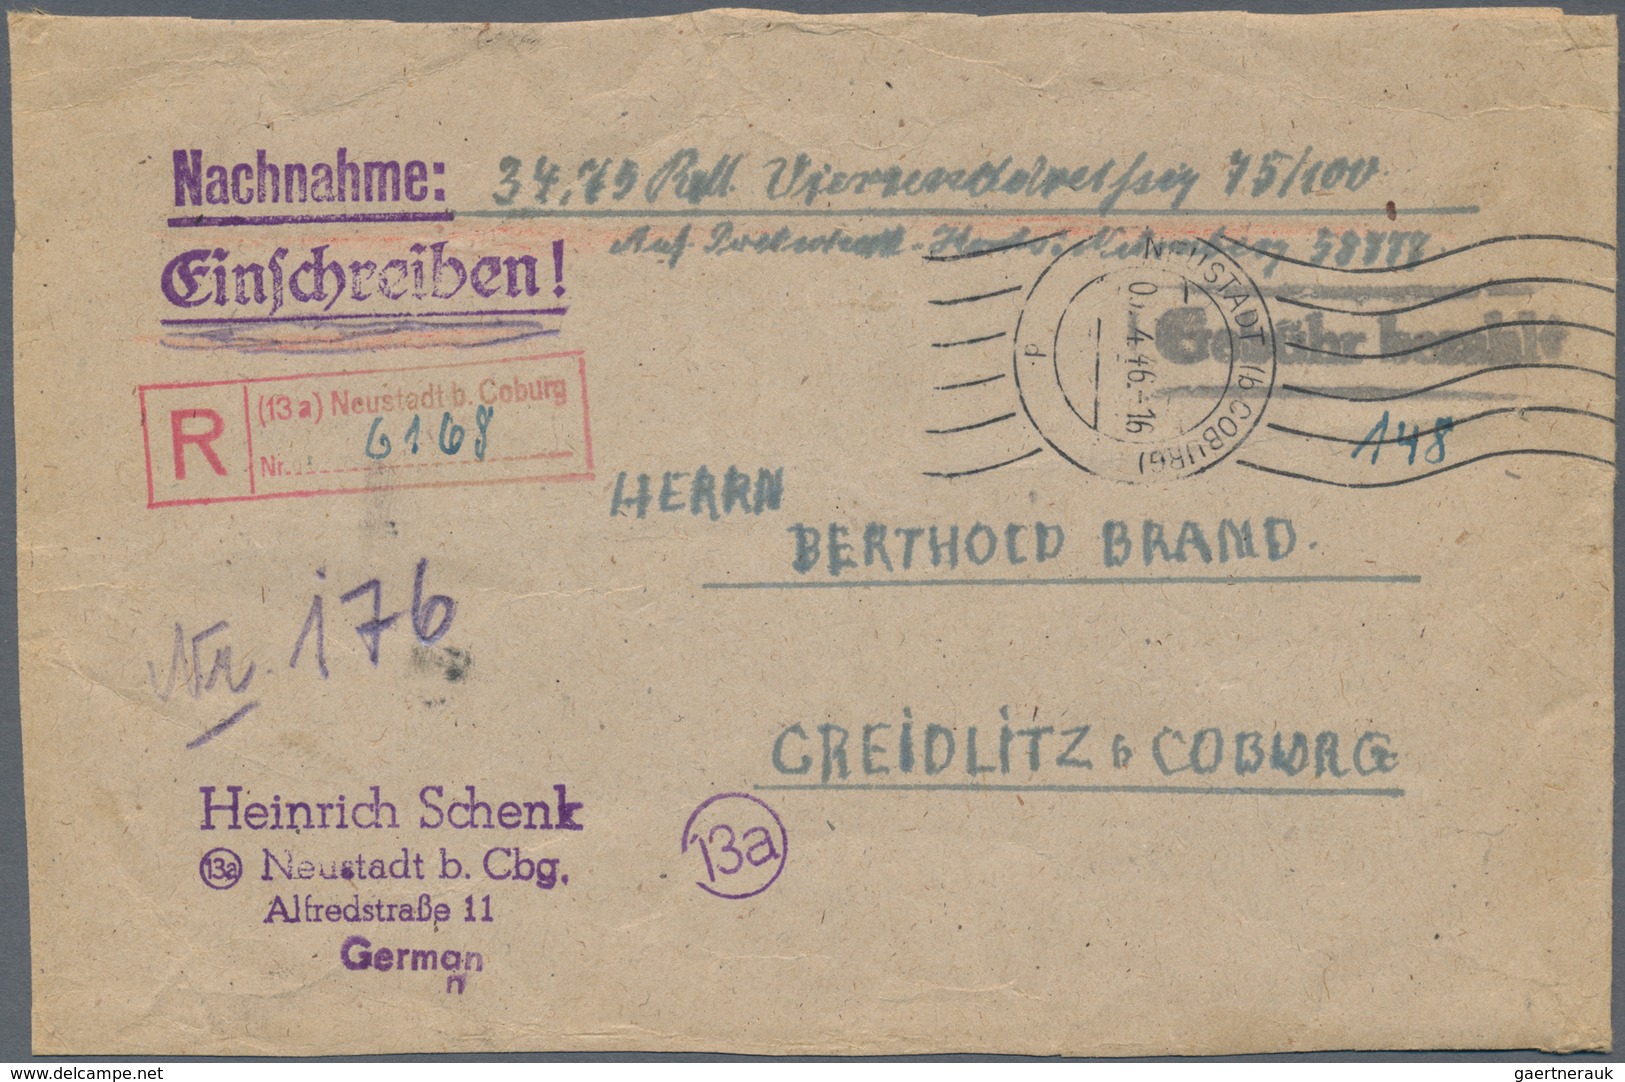 Alliierte Besetzung - Gebühr Bezahlt: 1945/1948, Franken Plz 13a, saubere Partie von ca. 153 Gebühr